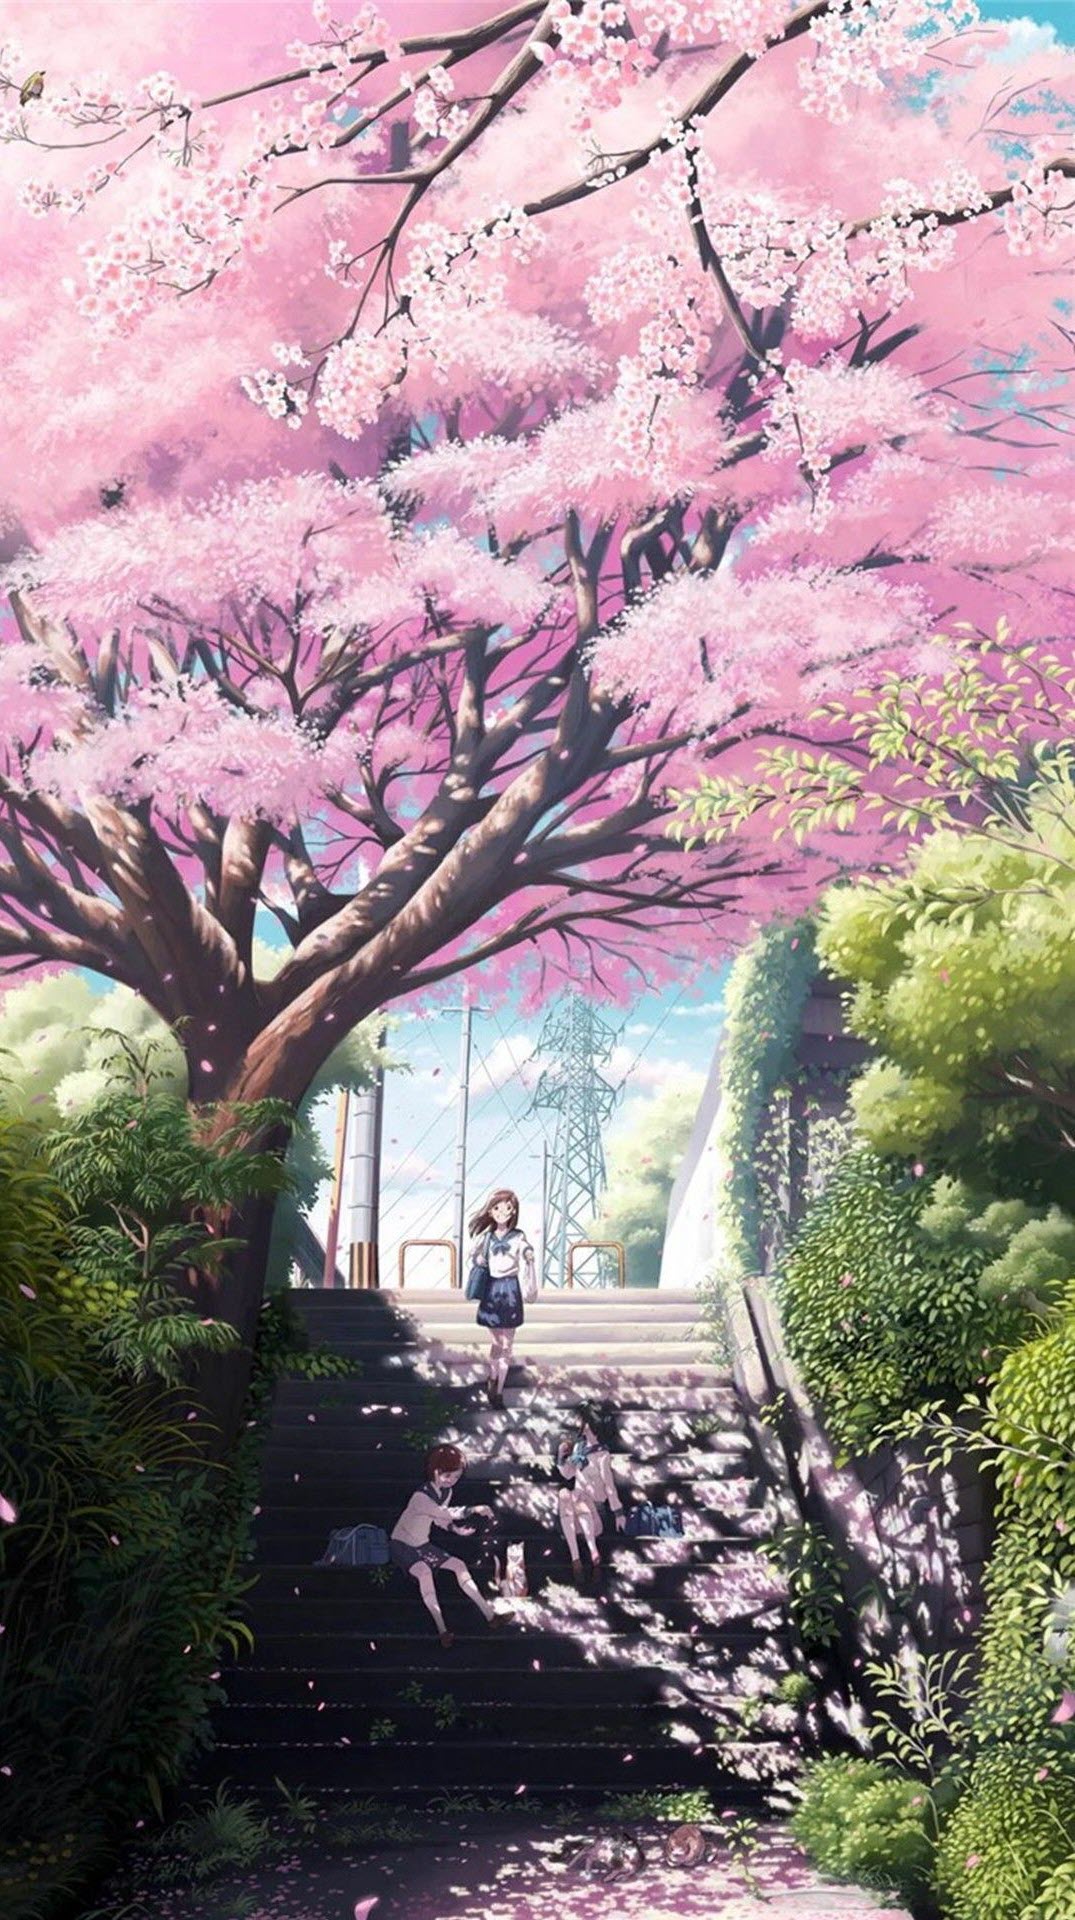 Ảnh nền Anime cảnh quan hoa anh khoan tuyệt đẹp mắt Full HD cho tới năng lượng điện thoại